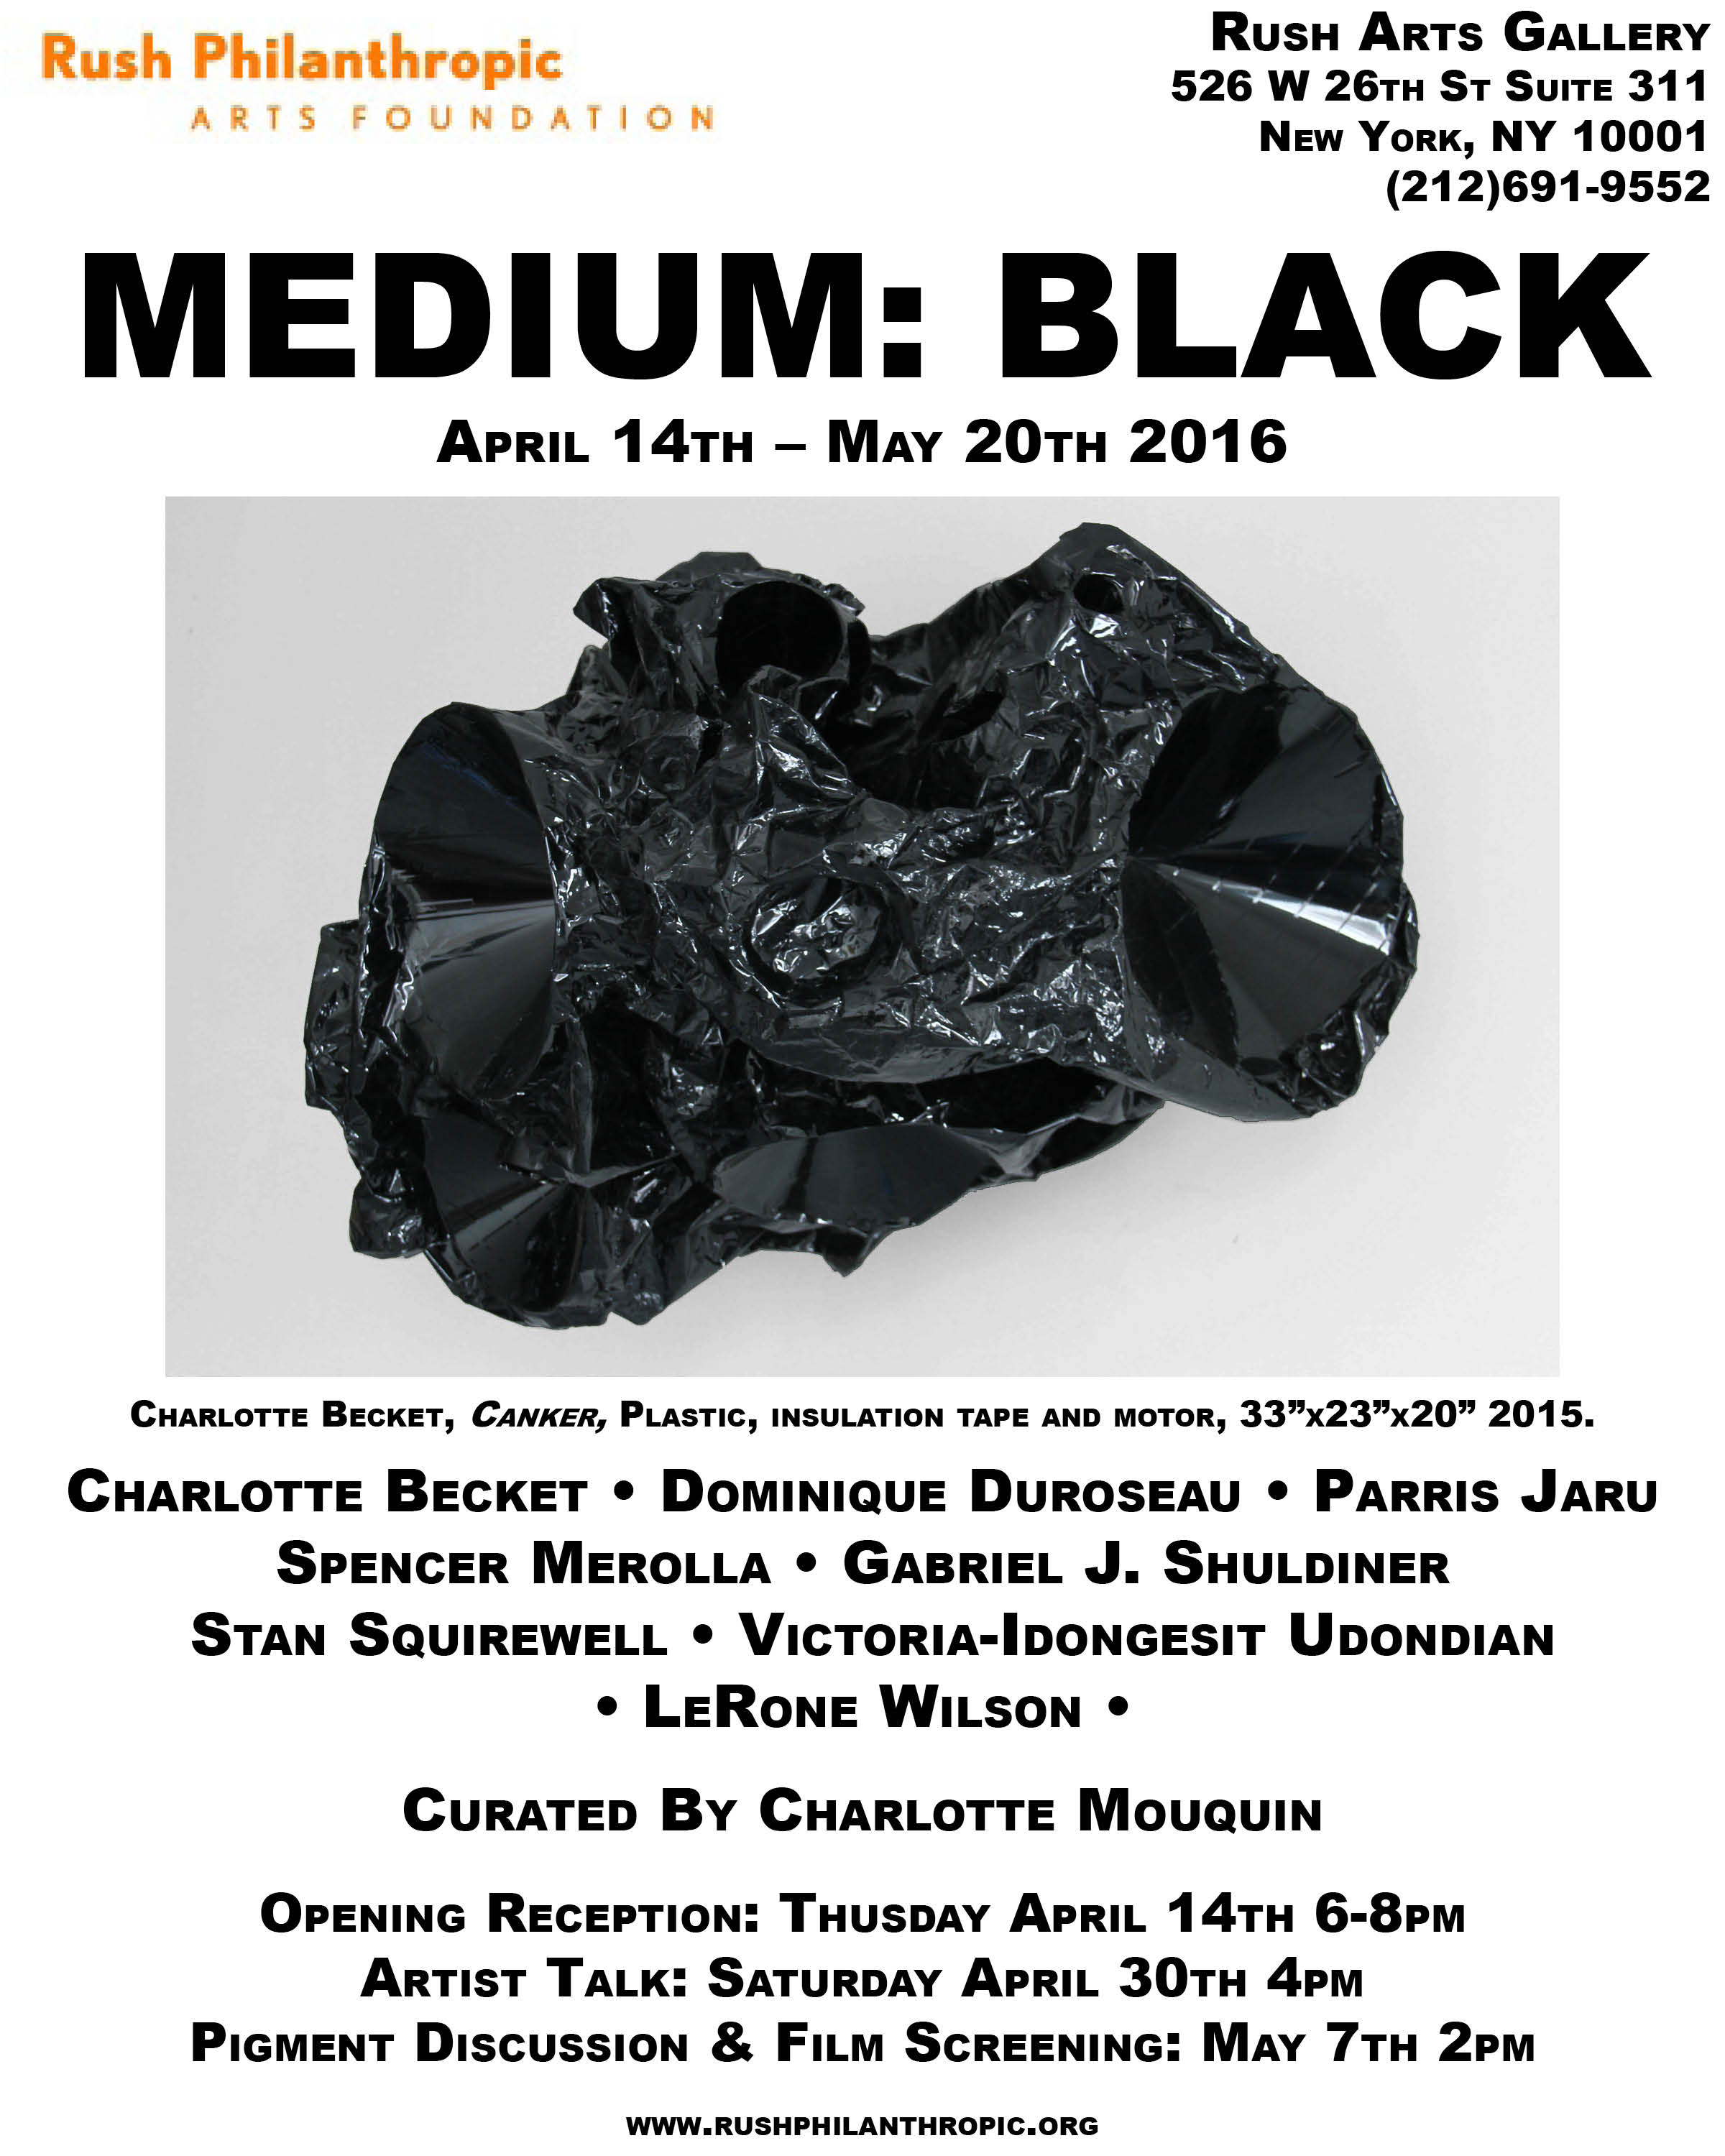 Medium: Black